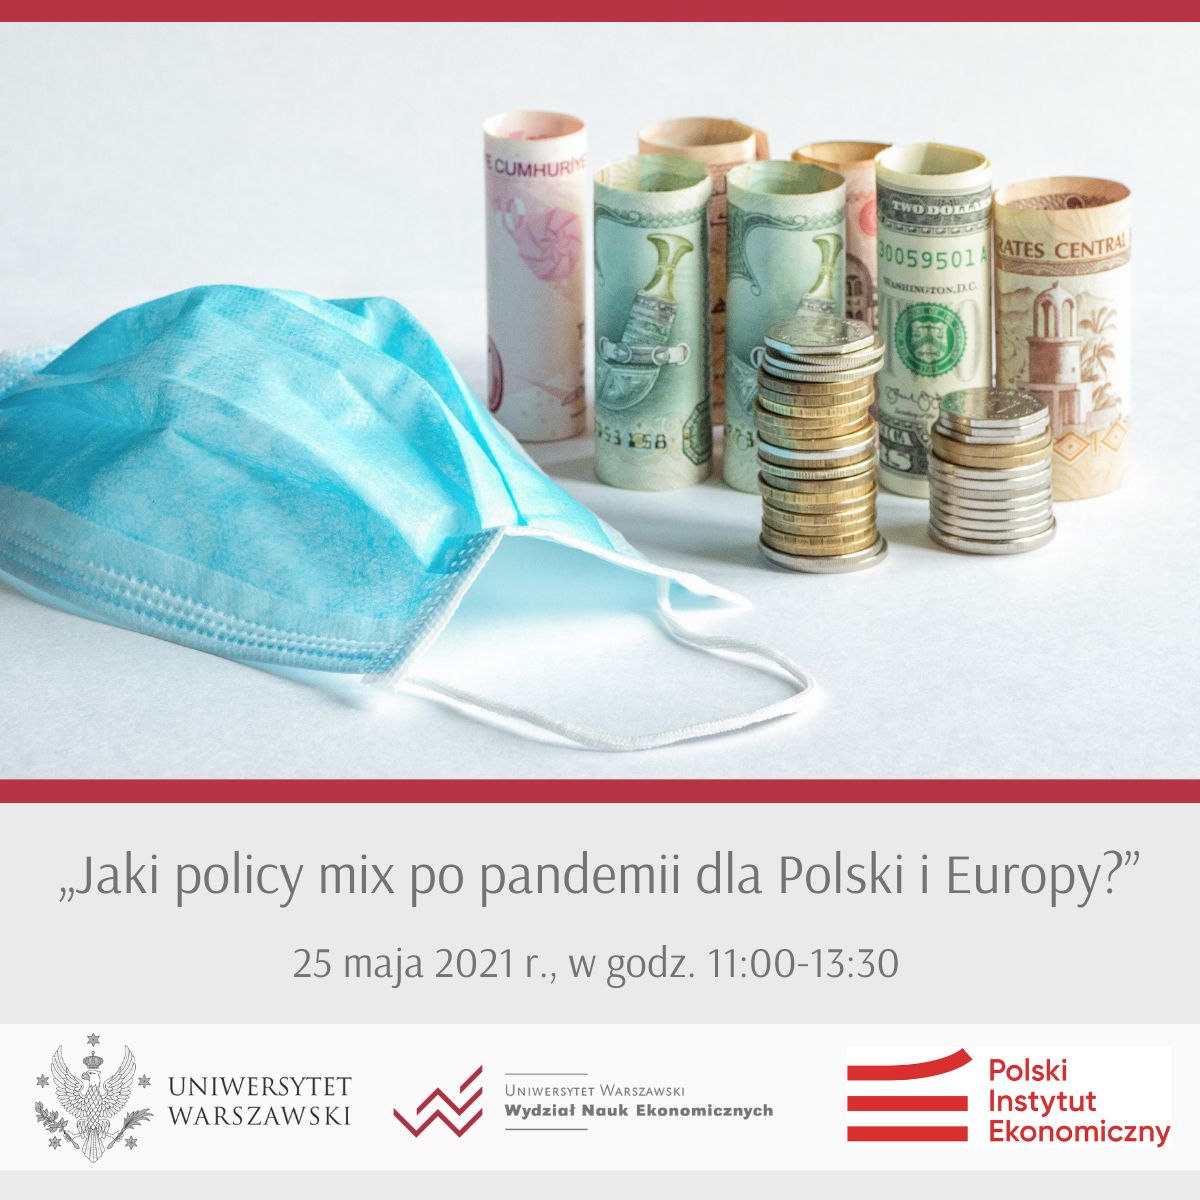 Jaki policy mix po pandemii dla Polski i Europy?